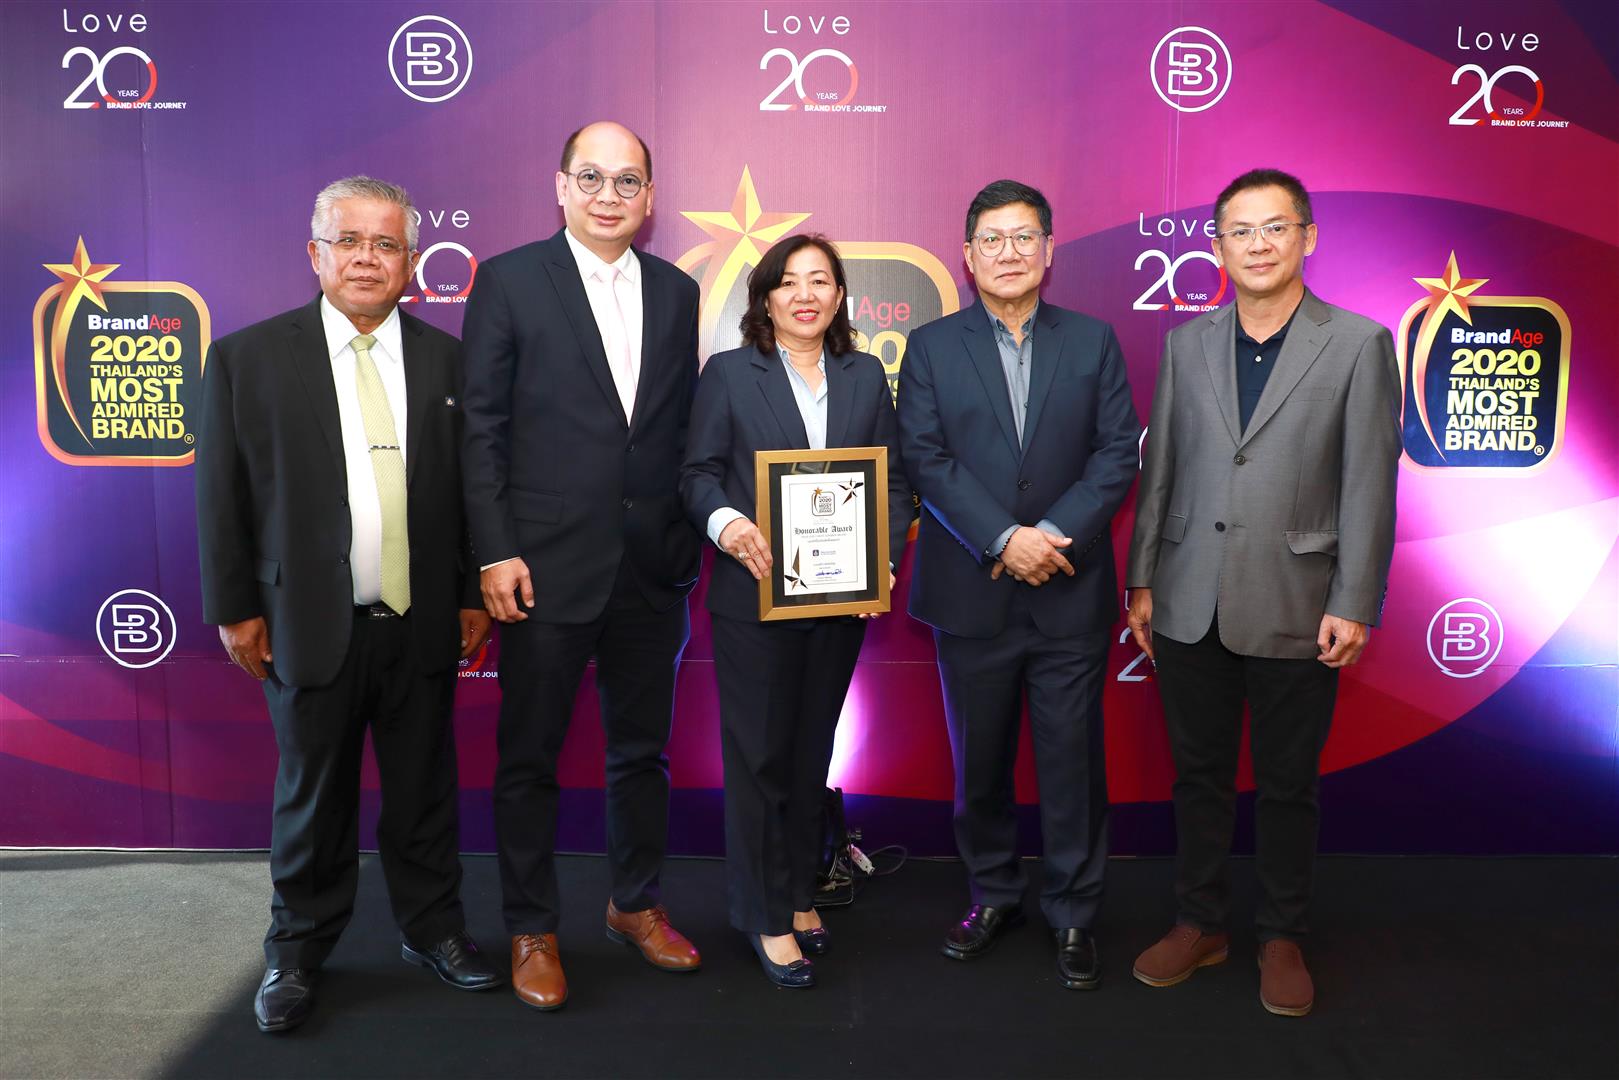 วิริยะประกันภัย รับรางวัล Thailand's Most Admired Brand ผู้นำกลุ่มประกันภัย ครองความน่าเชื่อถือสูงสุด 17 ปี ต่อเนื่อง